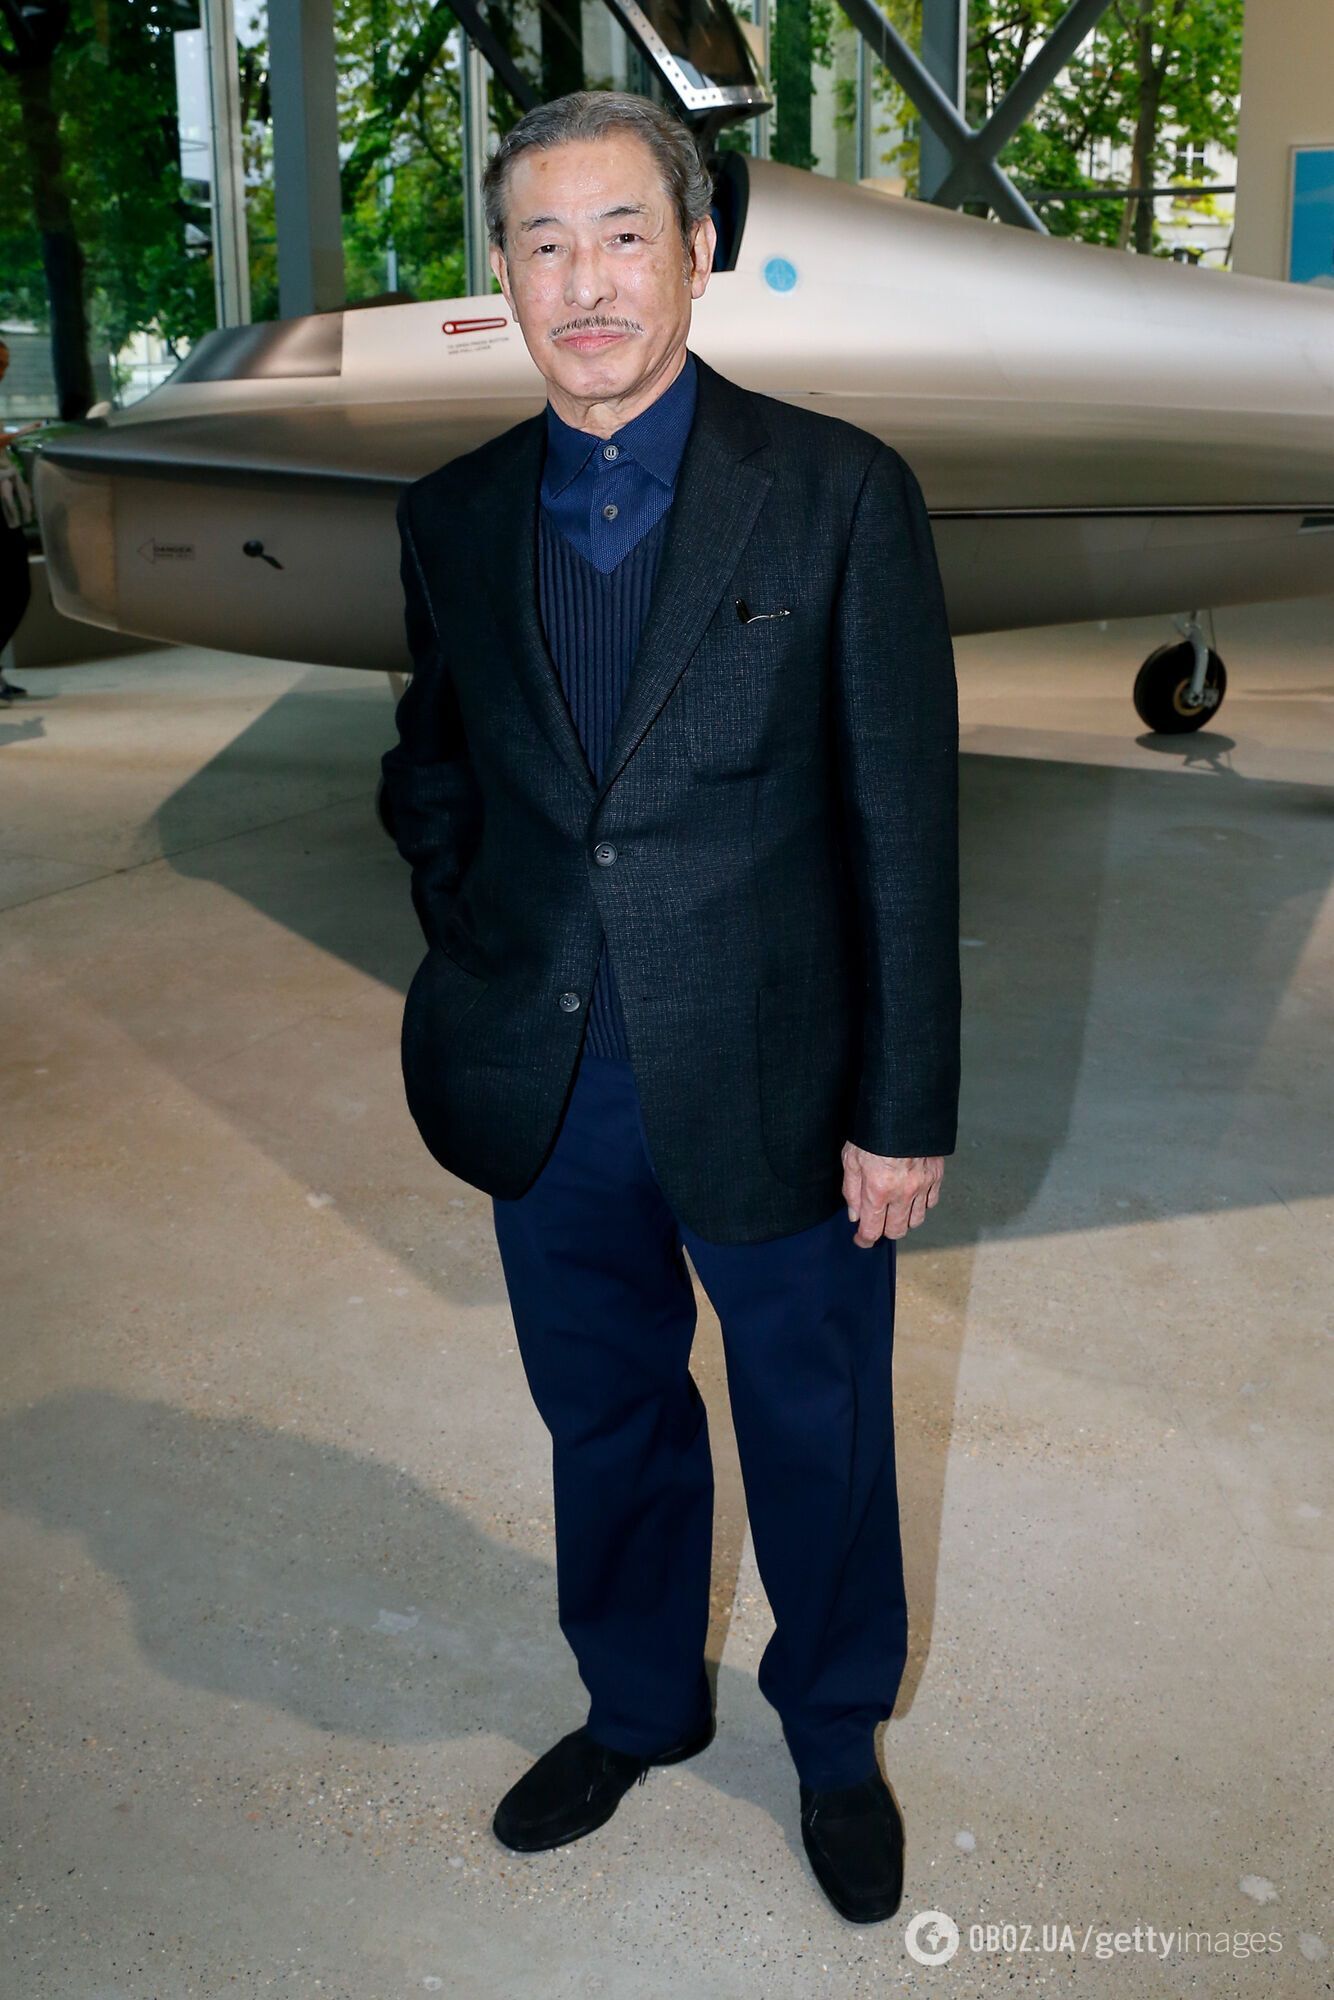 Один із найвідоміших світових модельєрів Іссей Міяке помер від раку